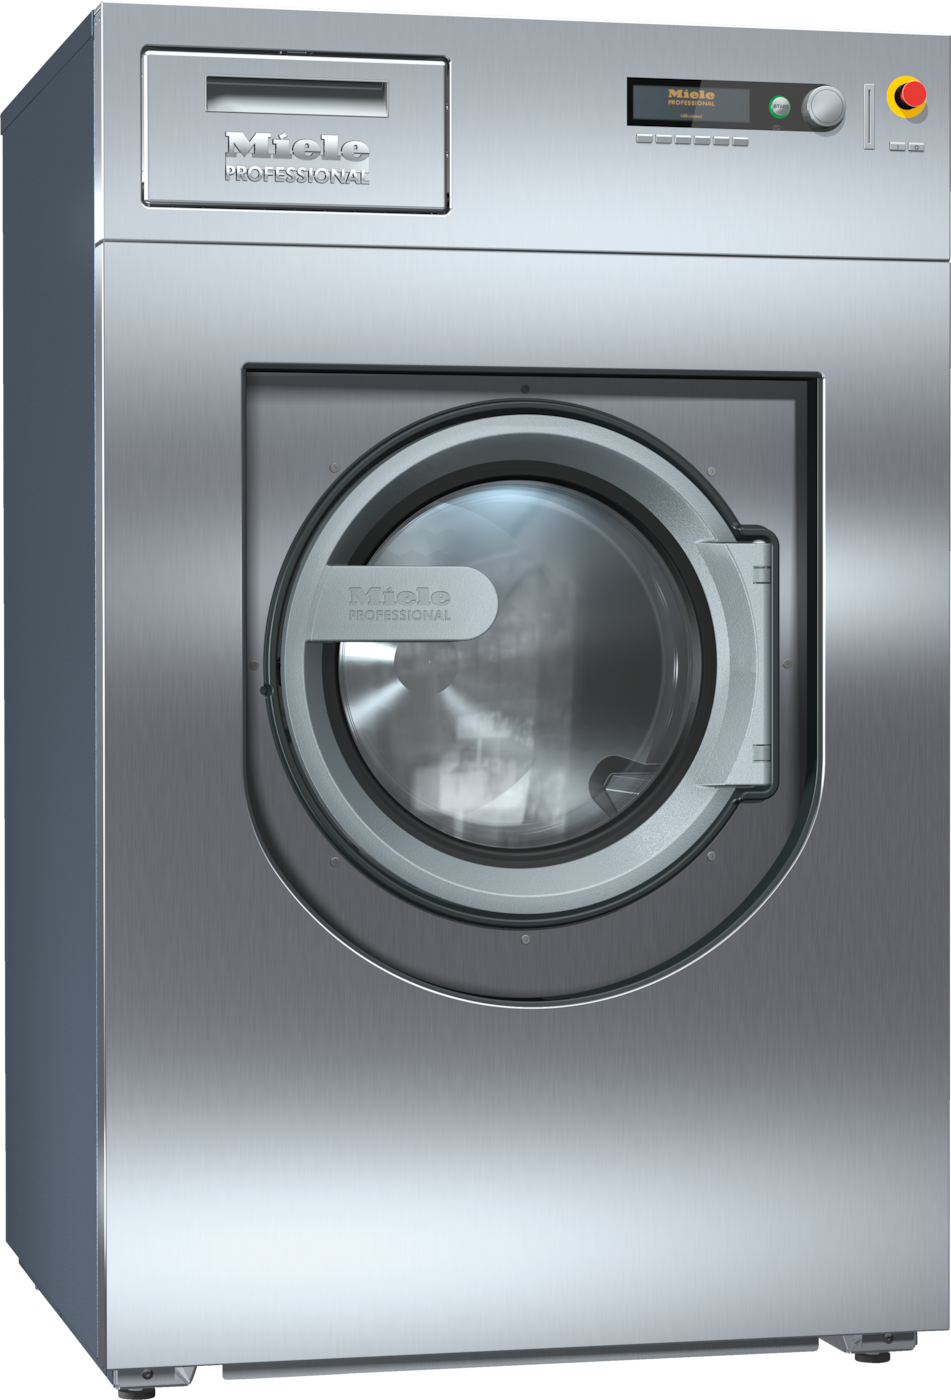 PW 818 [EL MAR WEK MF] - Washing machine, electrically heated 